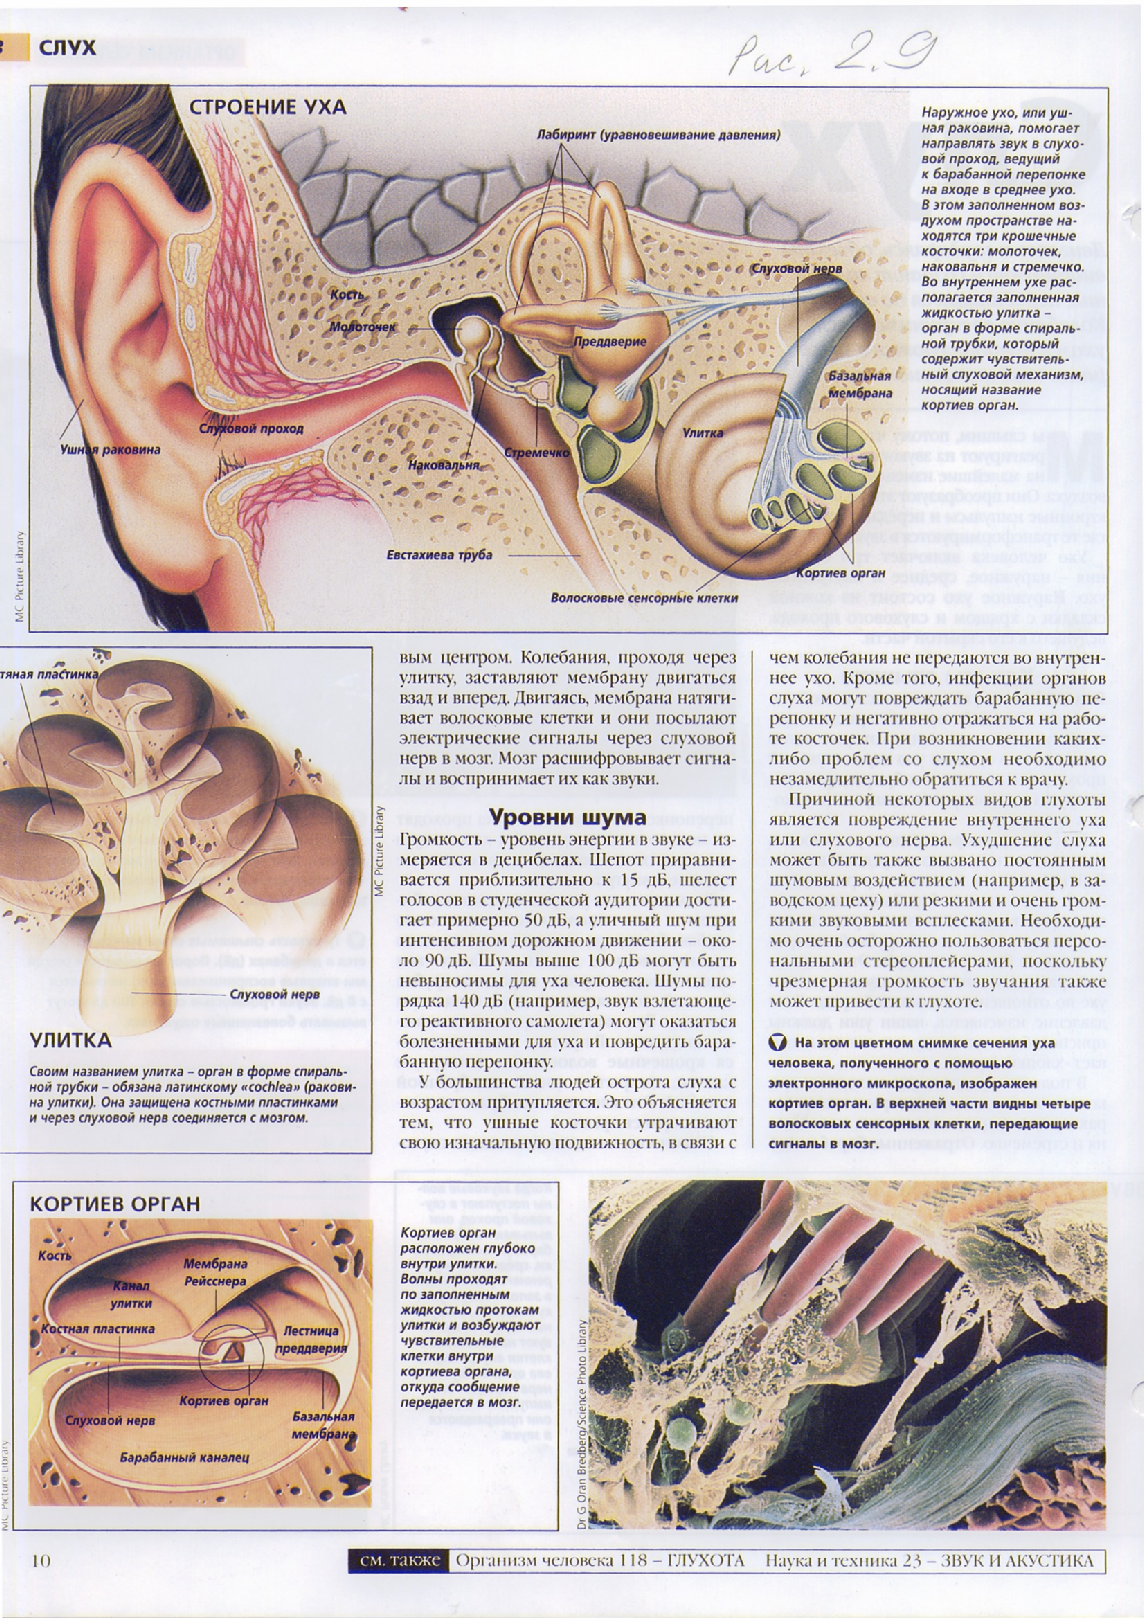 Улитка и слуховой нерв